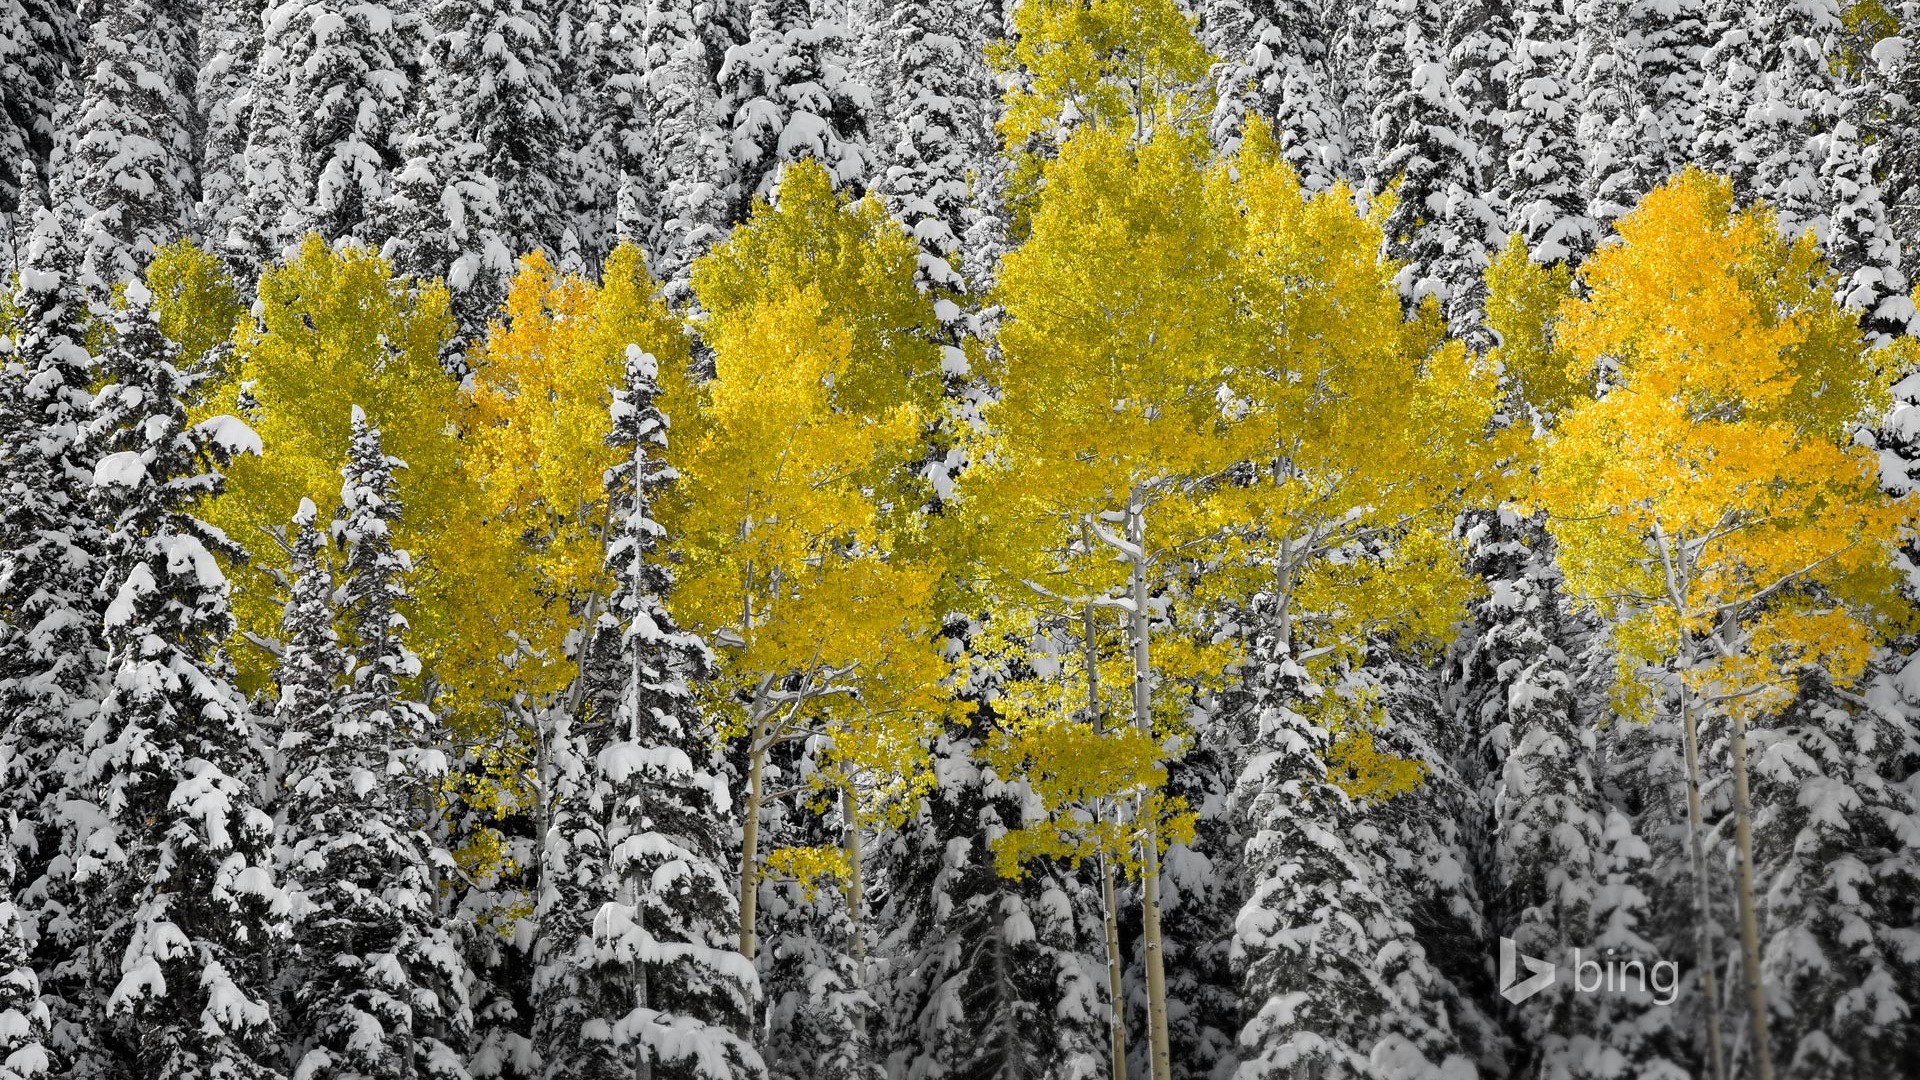 November 2014 Bing Landschaft Hintergrundbilder #5 - 1920x1080